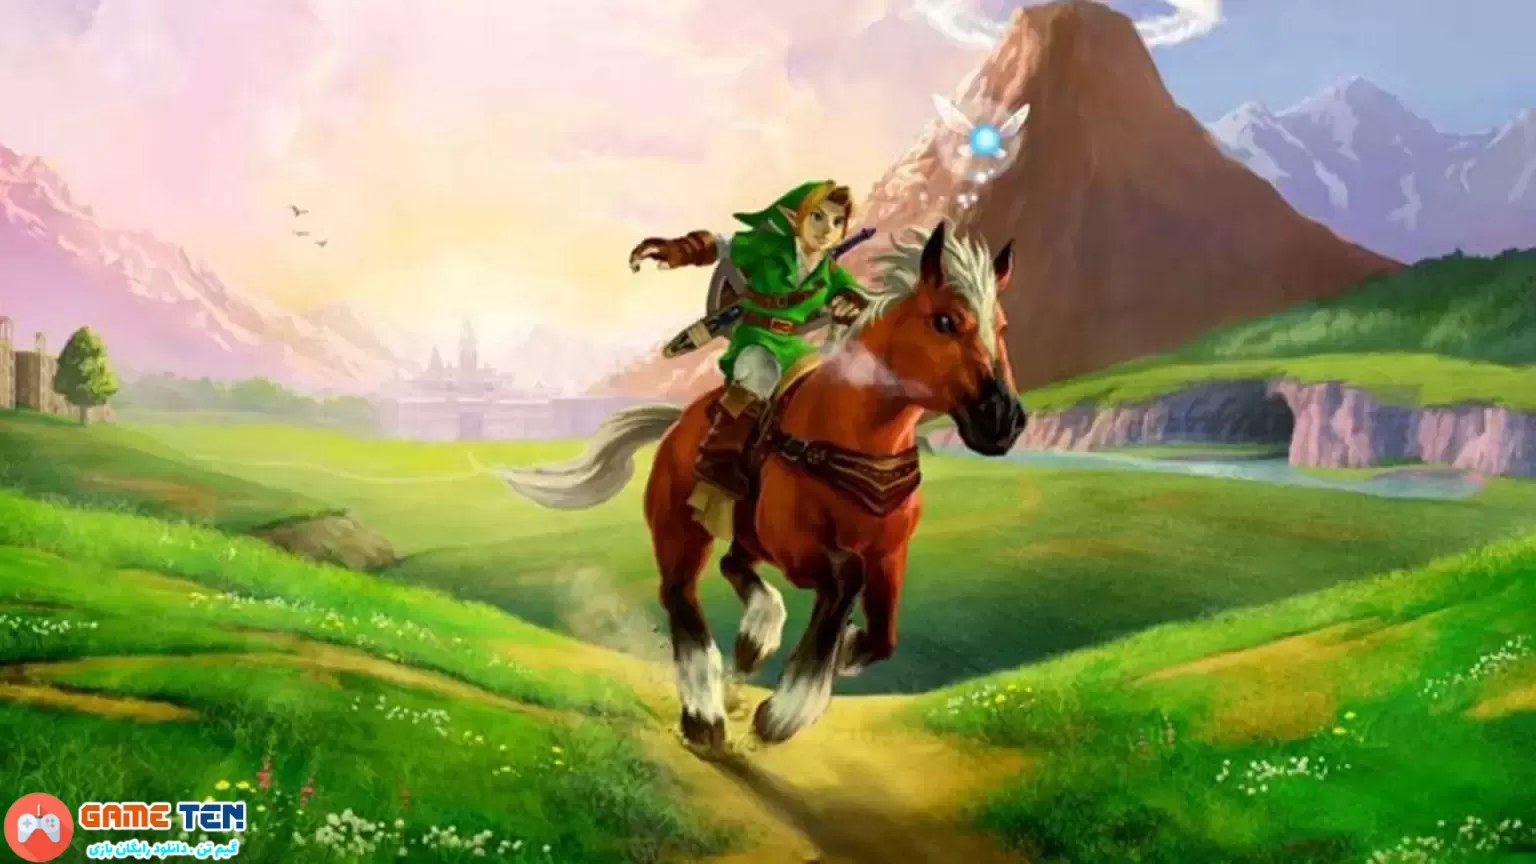 خودداری سازنده بازی Zelda از صحبت درباره احتمال ریمیک Ocarina of Time